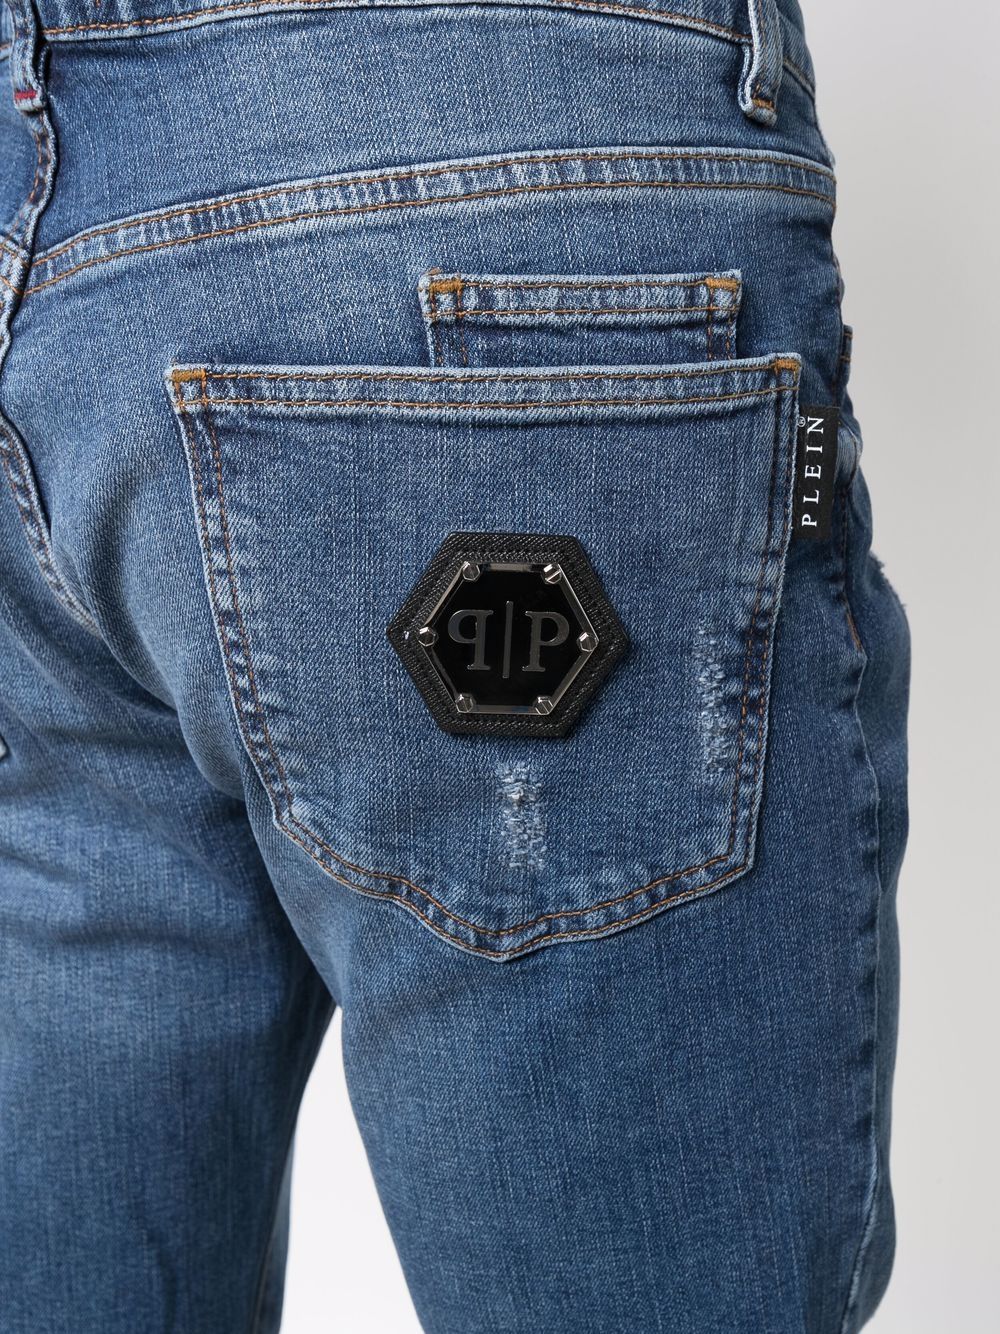 фото Philipp plein узкие джинсы с заниженной талией